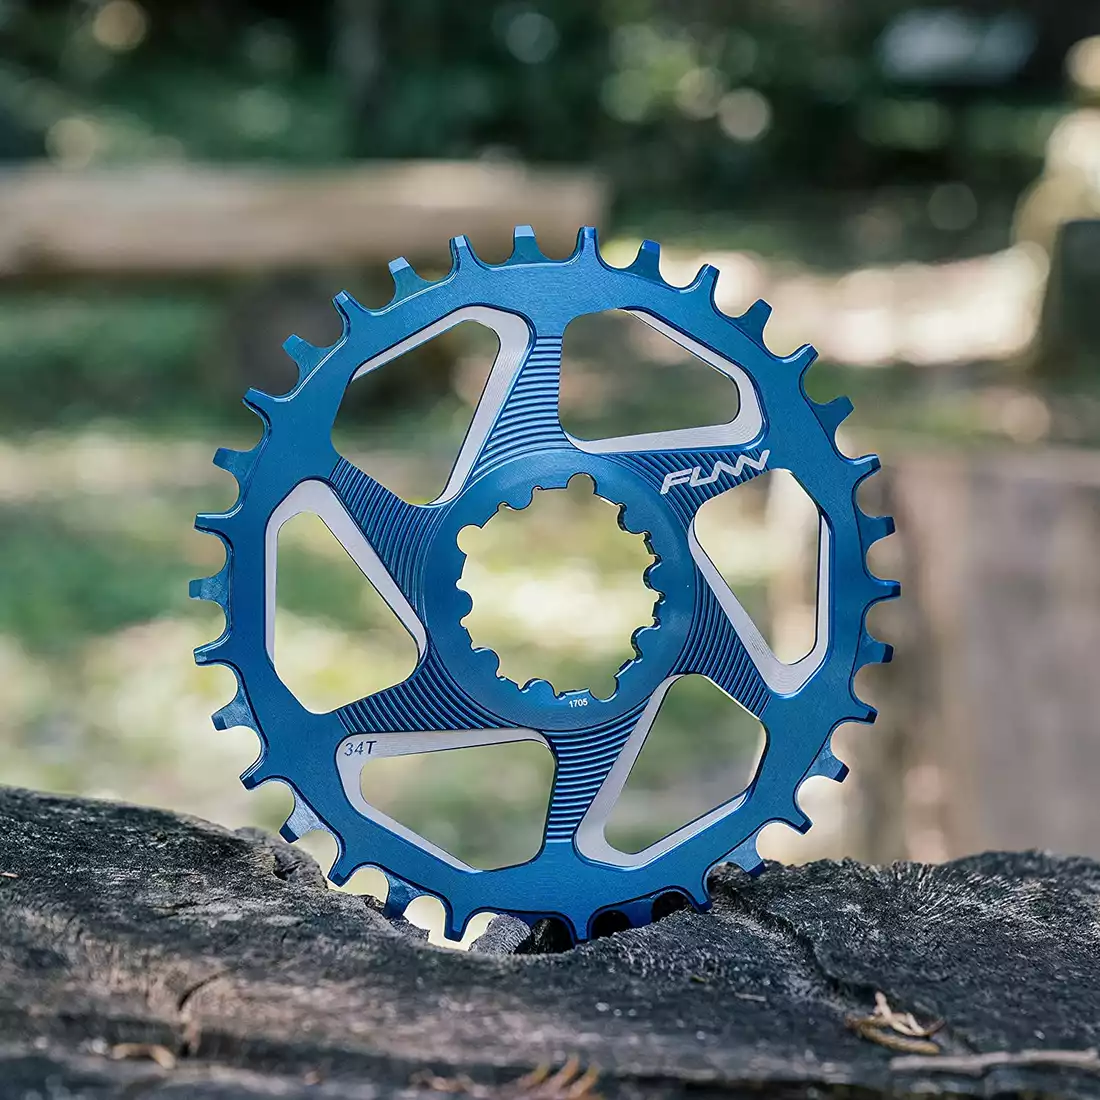 FUNN SOLO DX NARROW-WIDE BOOST 34T kék lánckerék kerékpár hajtókarhoz